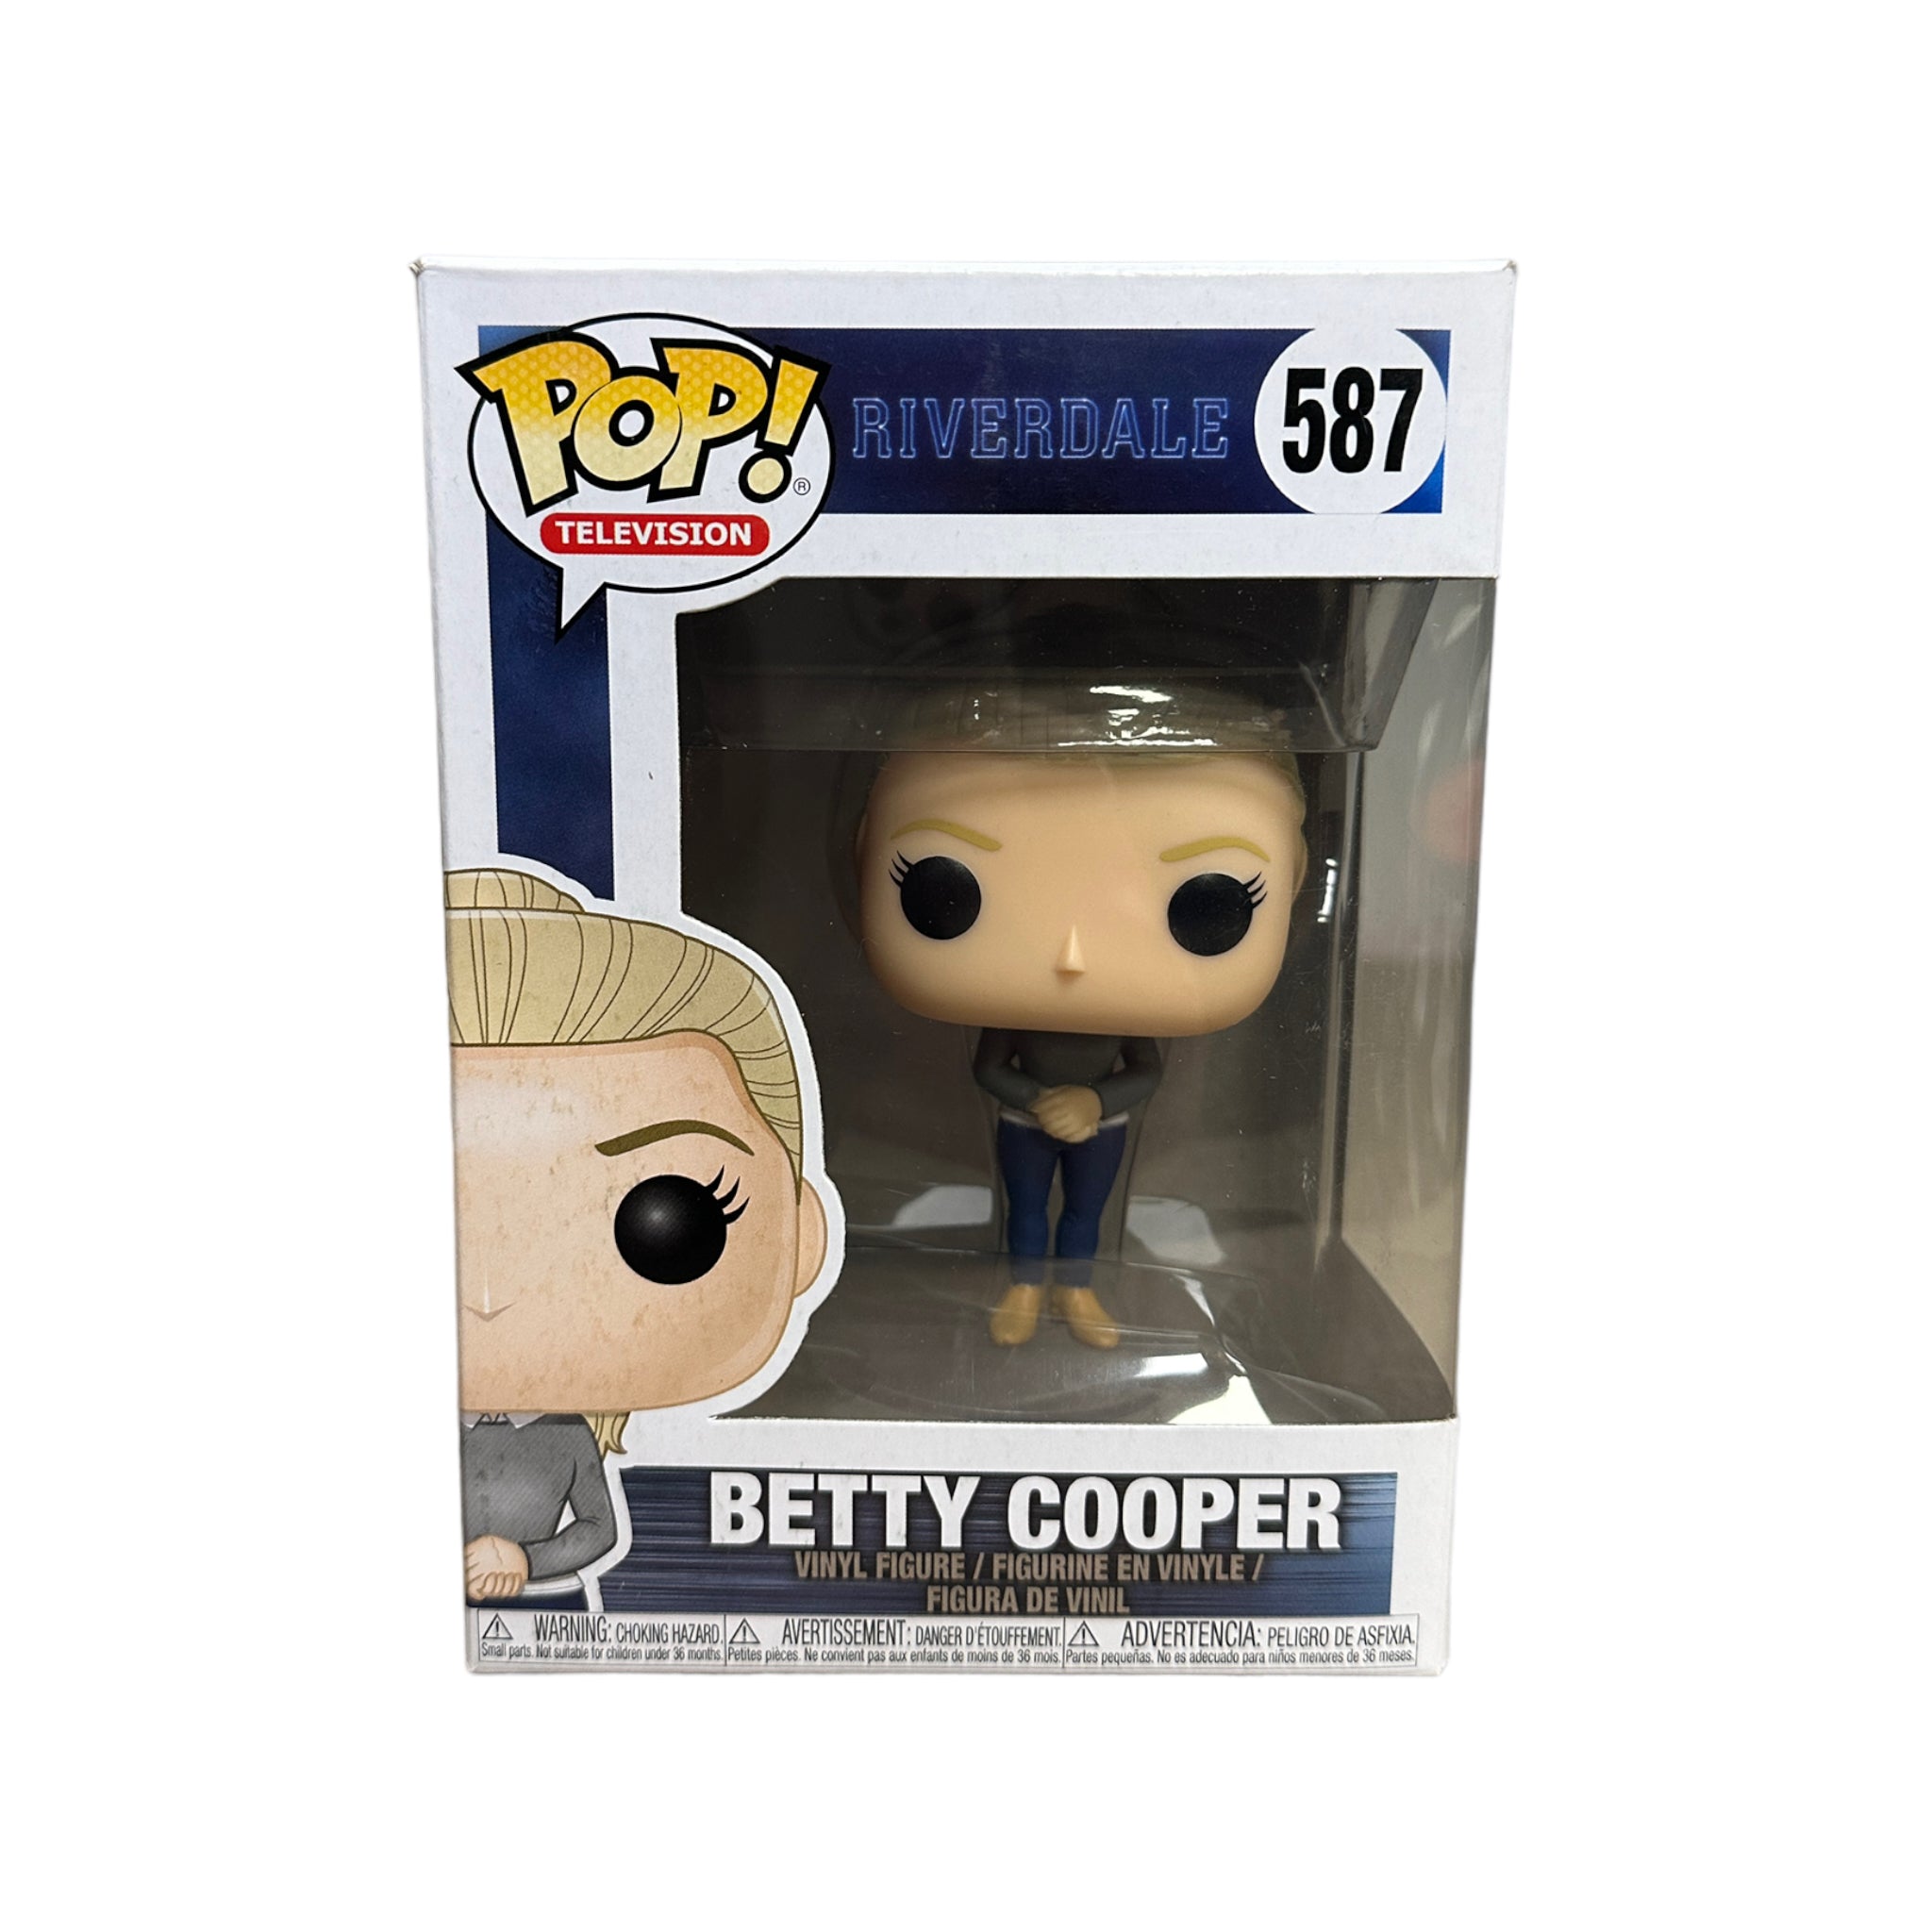 Betty Cooper #587 Funko Pop! - Riverdale - 2018 Pop! - Condition 8/10